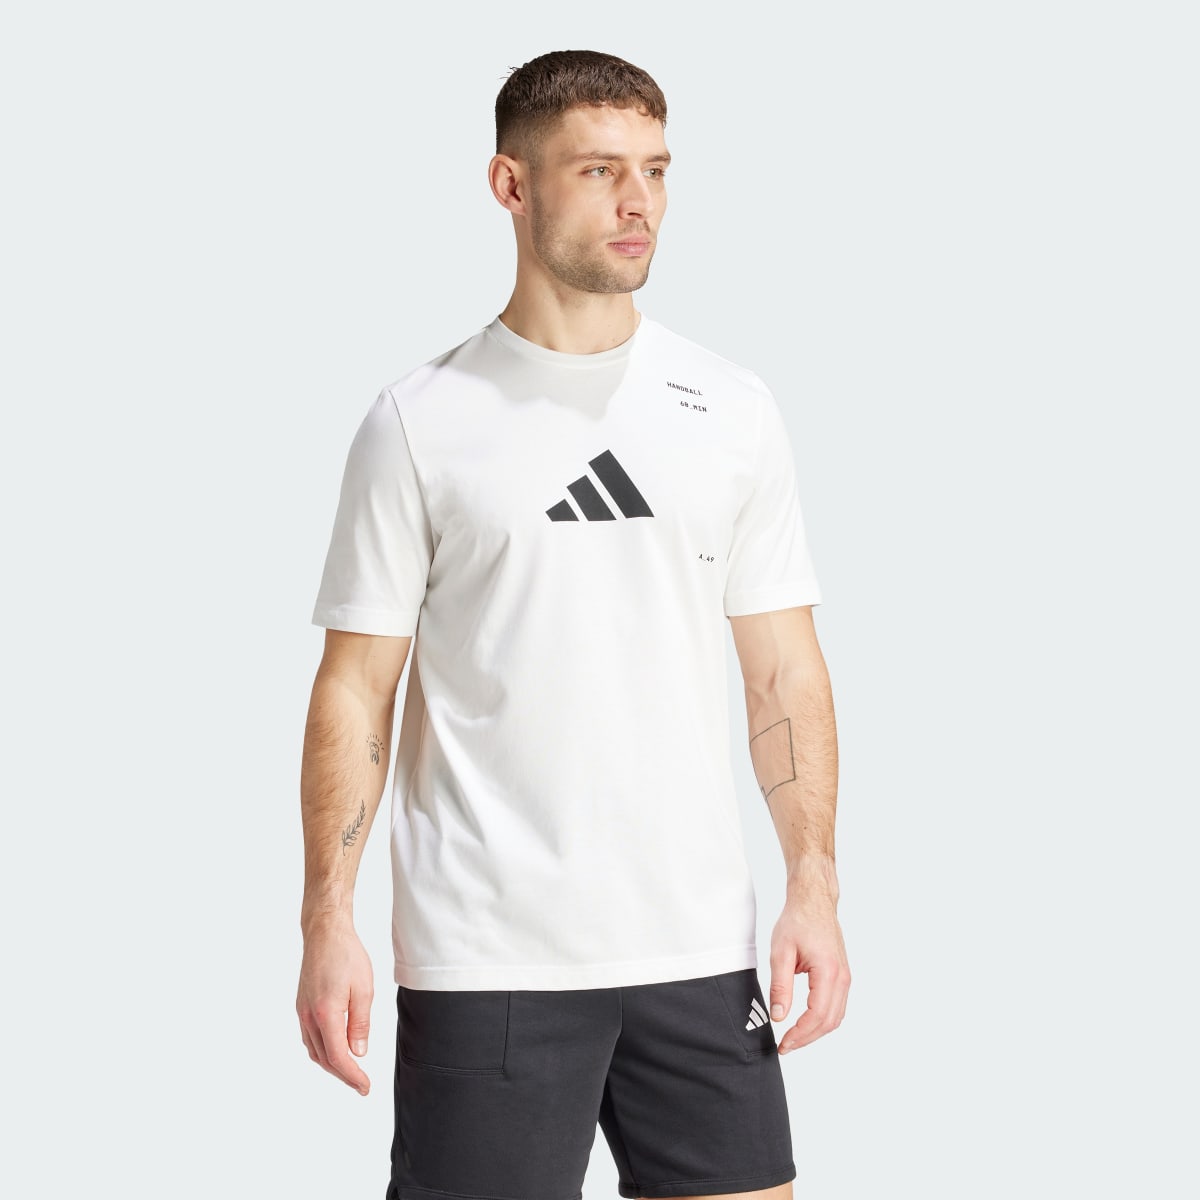 Adidas T-shirt graphique Handball Category. 4